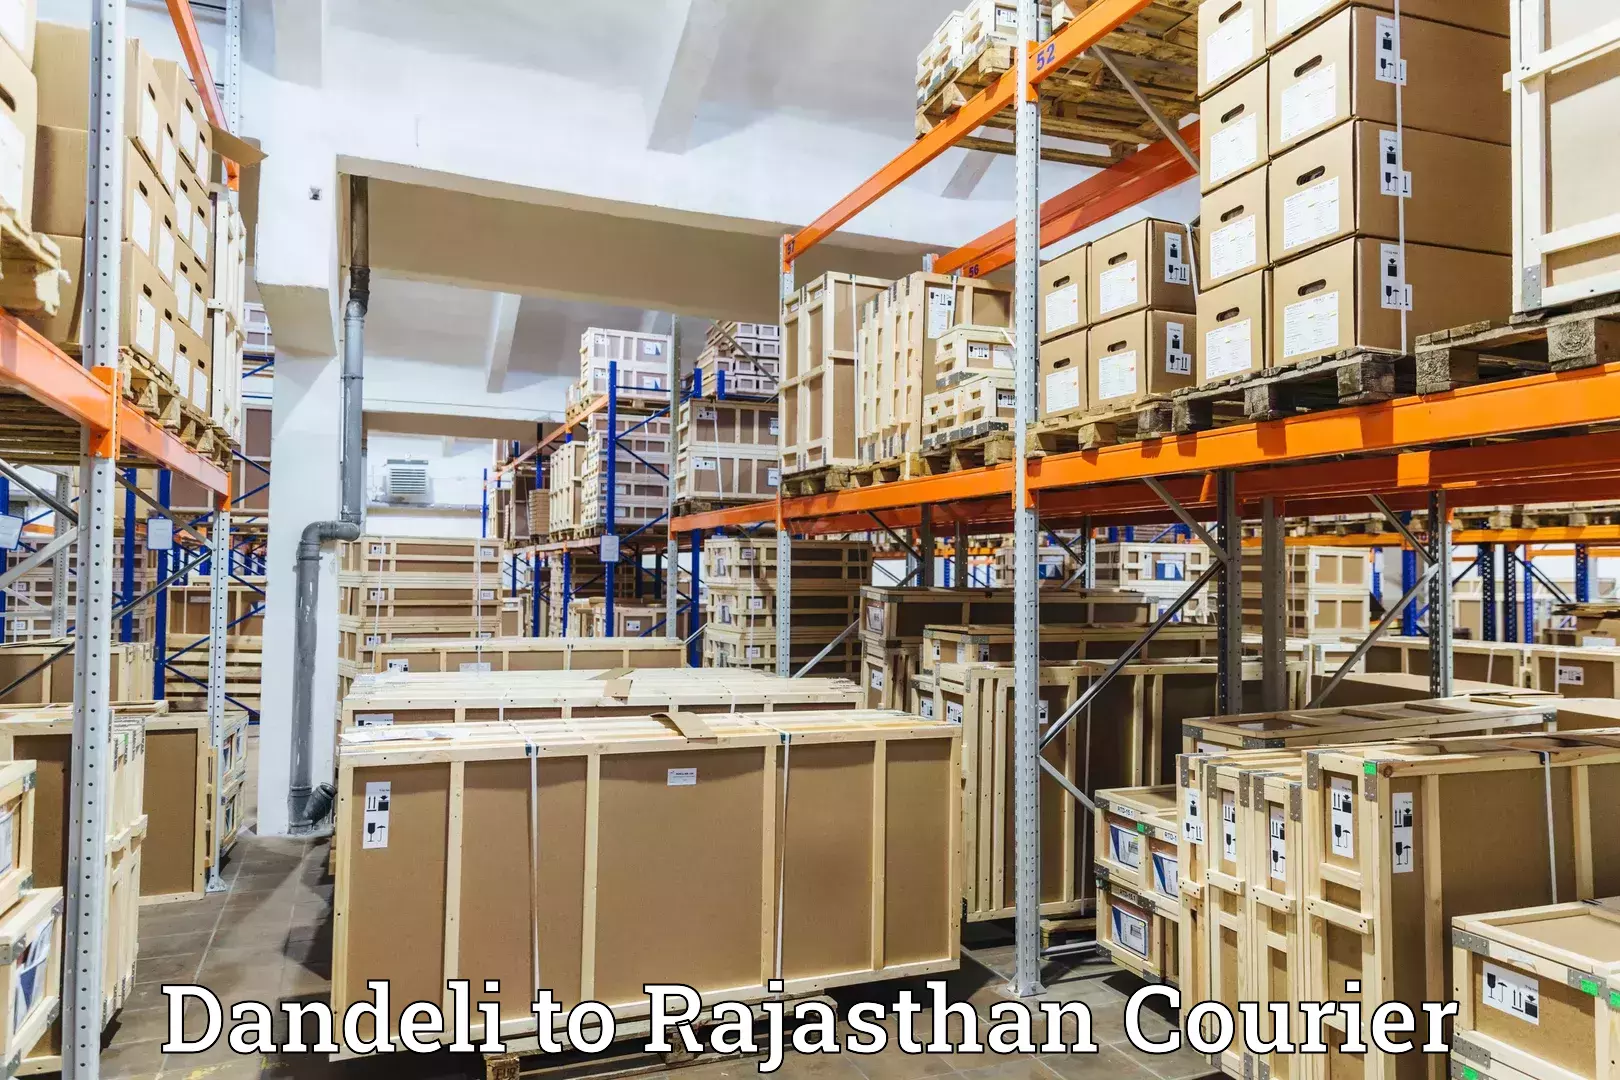 Global courier networks Dandeli to Keshoraipatan